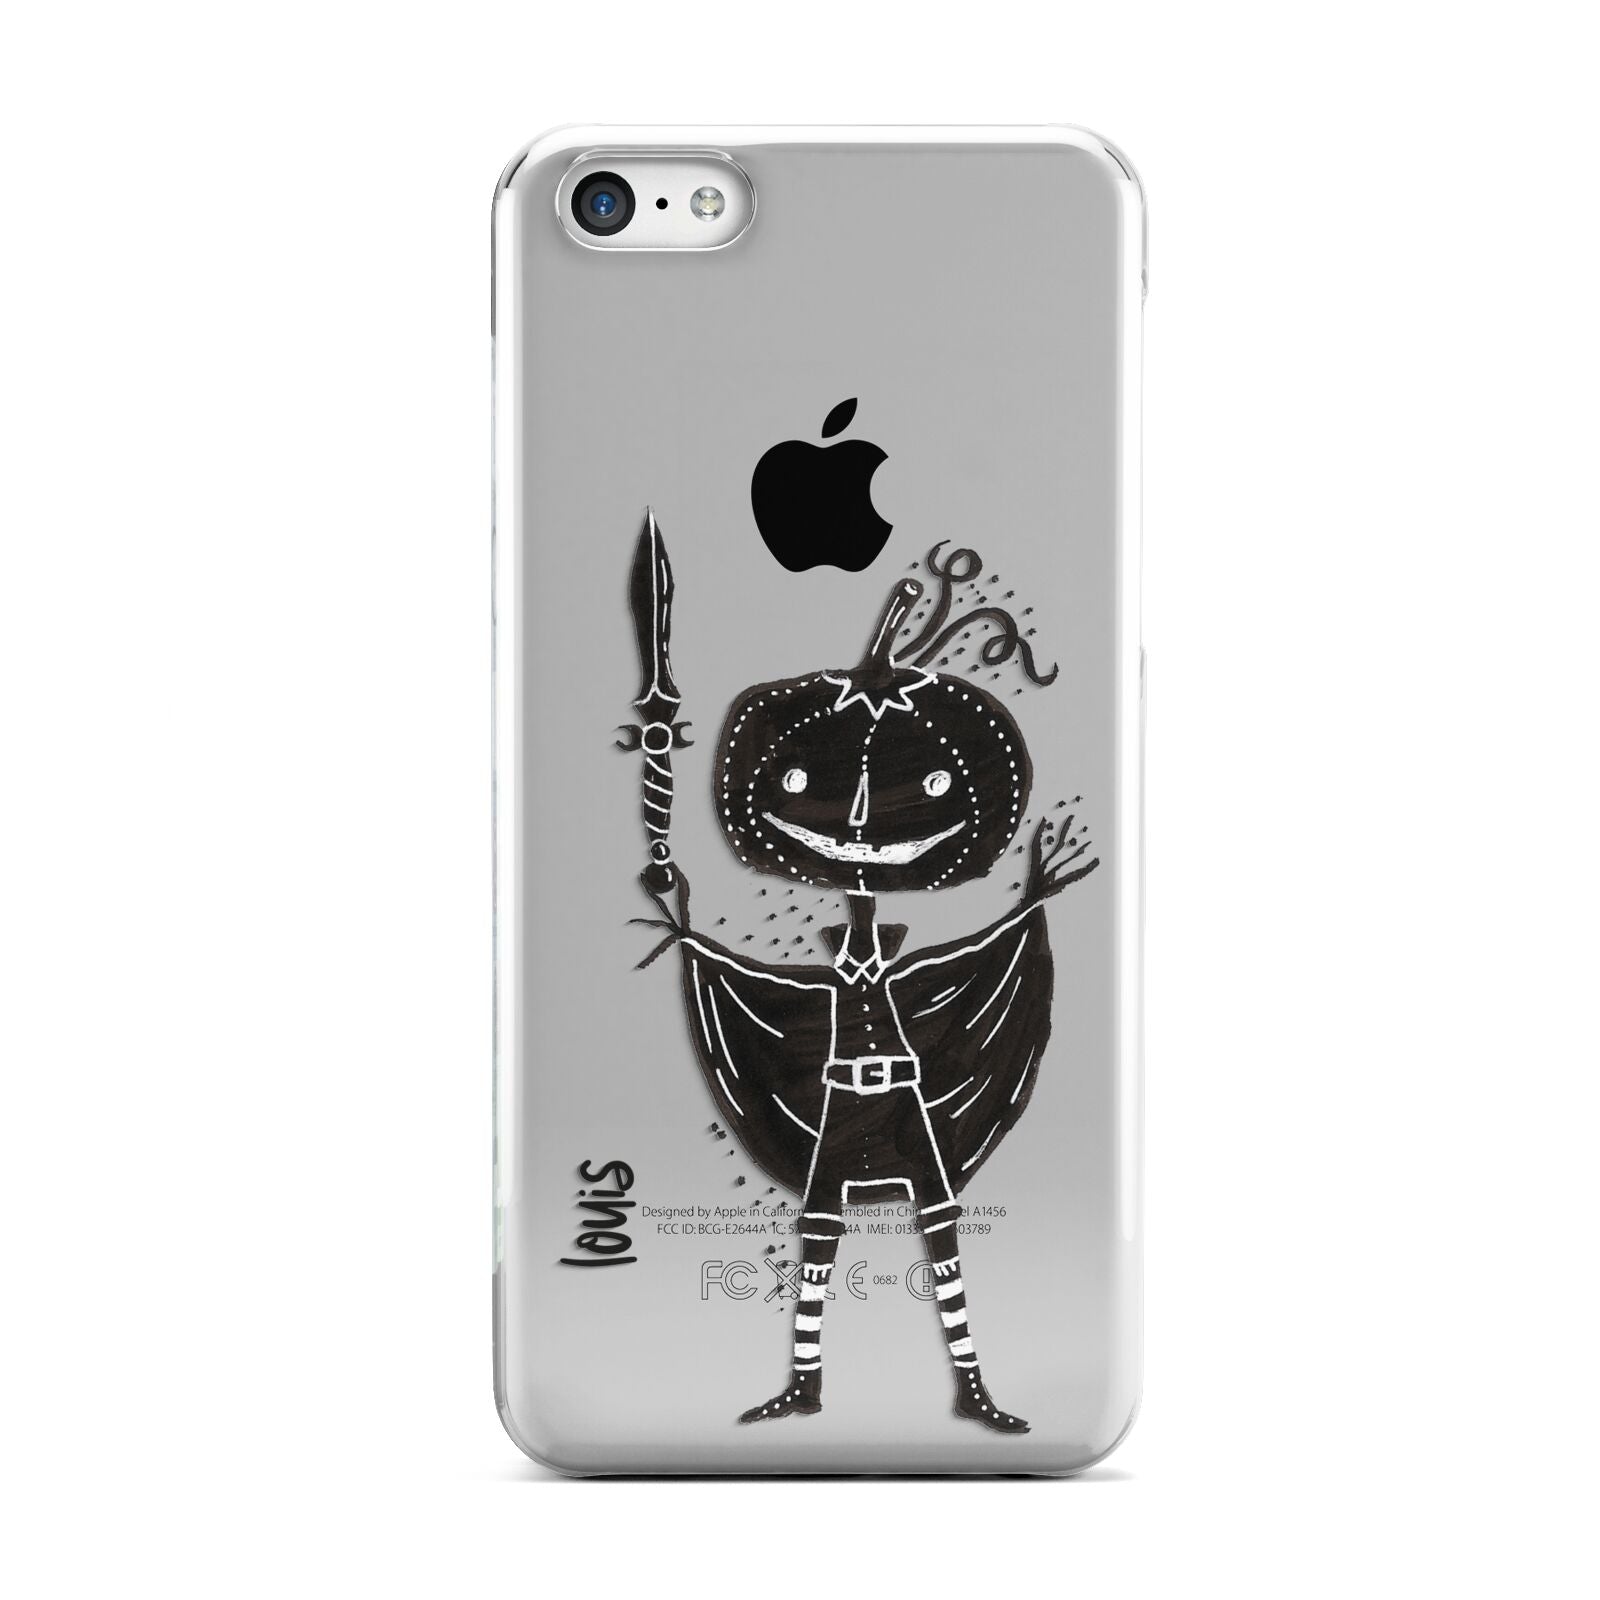 Pumpkin Head Personalised Apple iPhone 5c Case